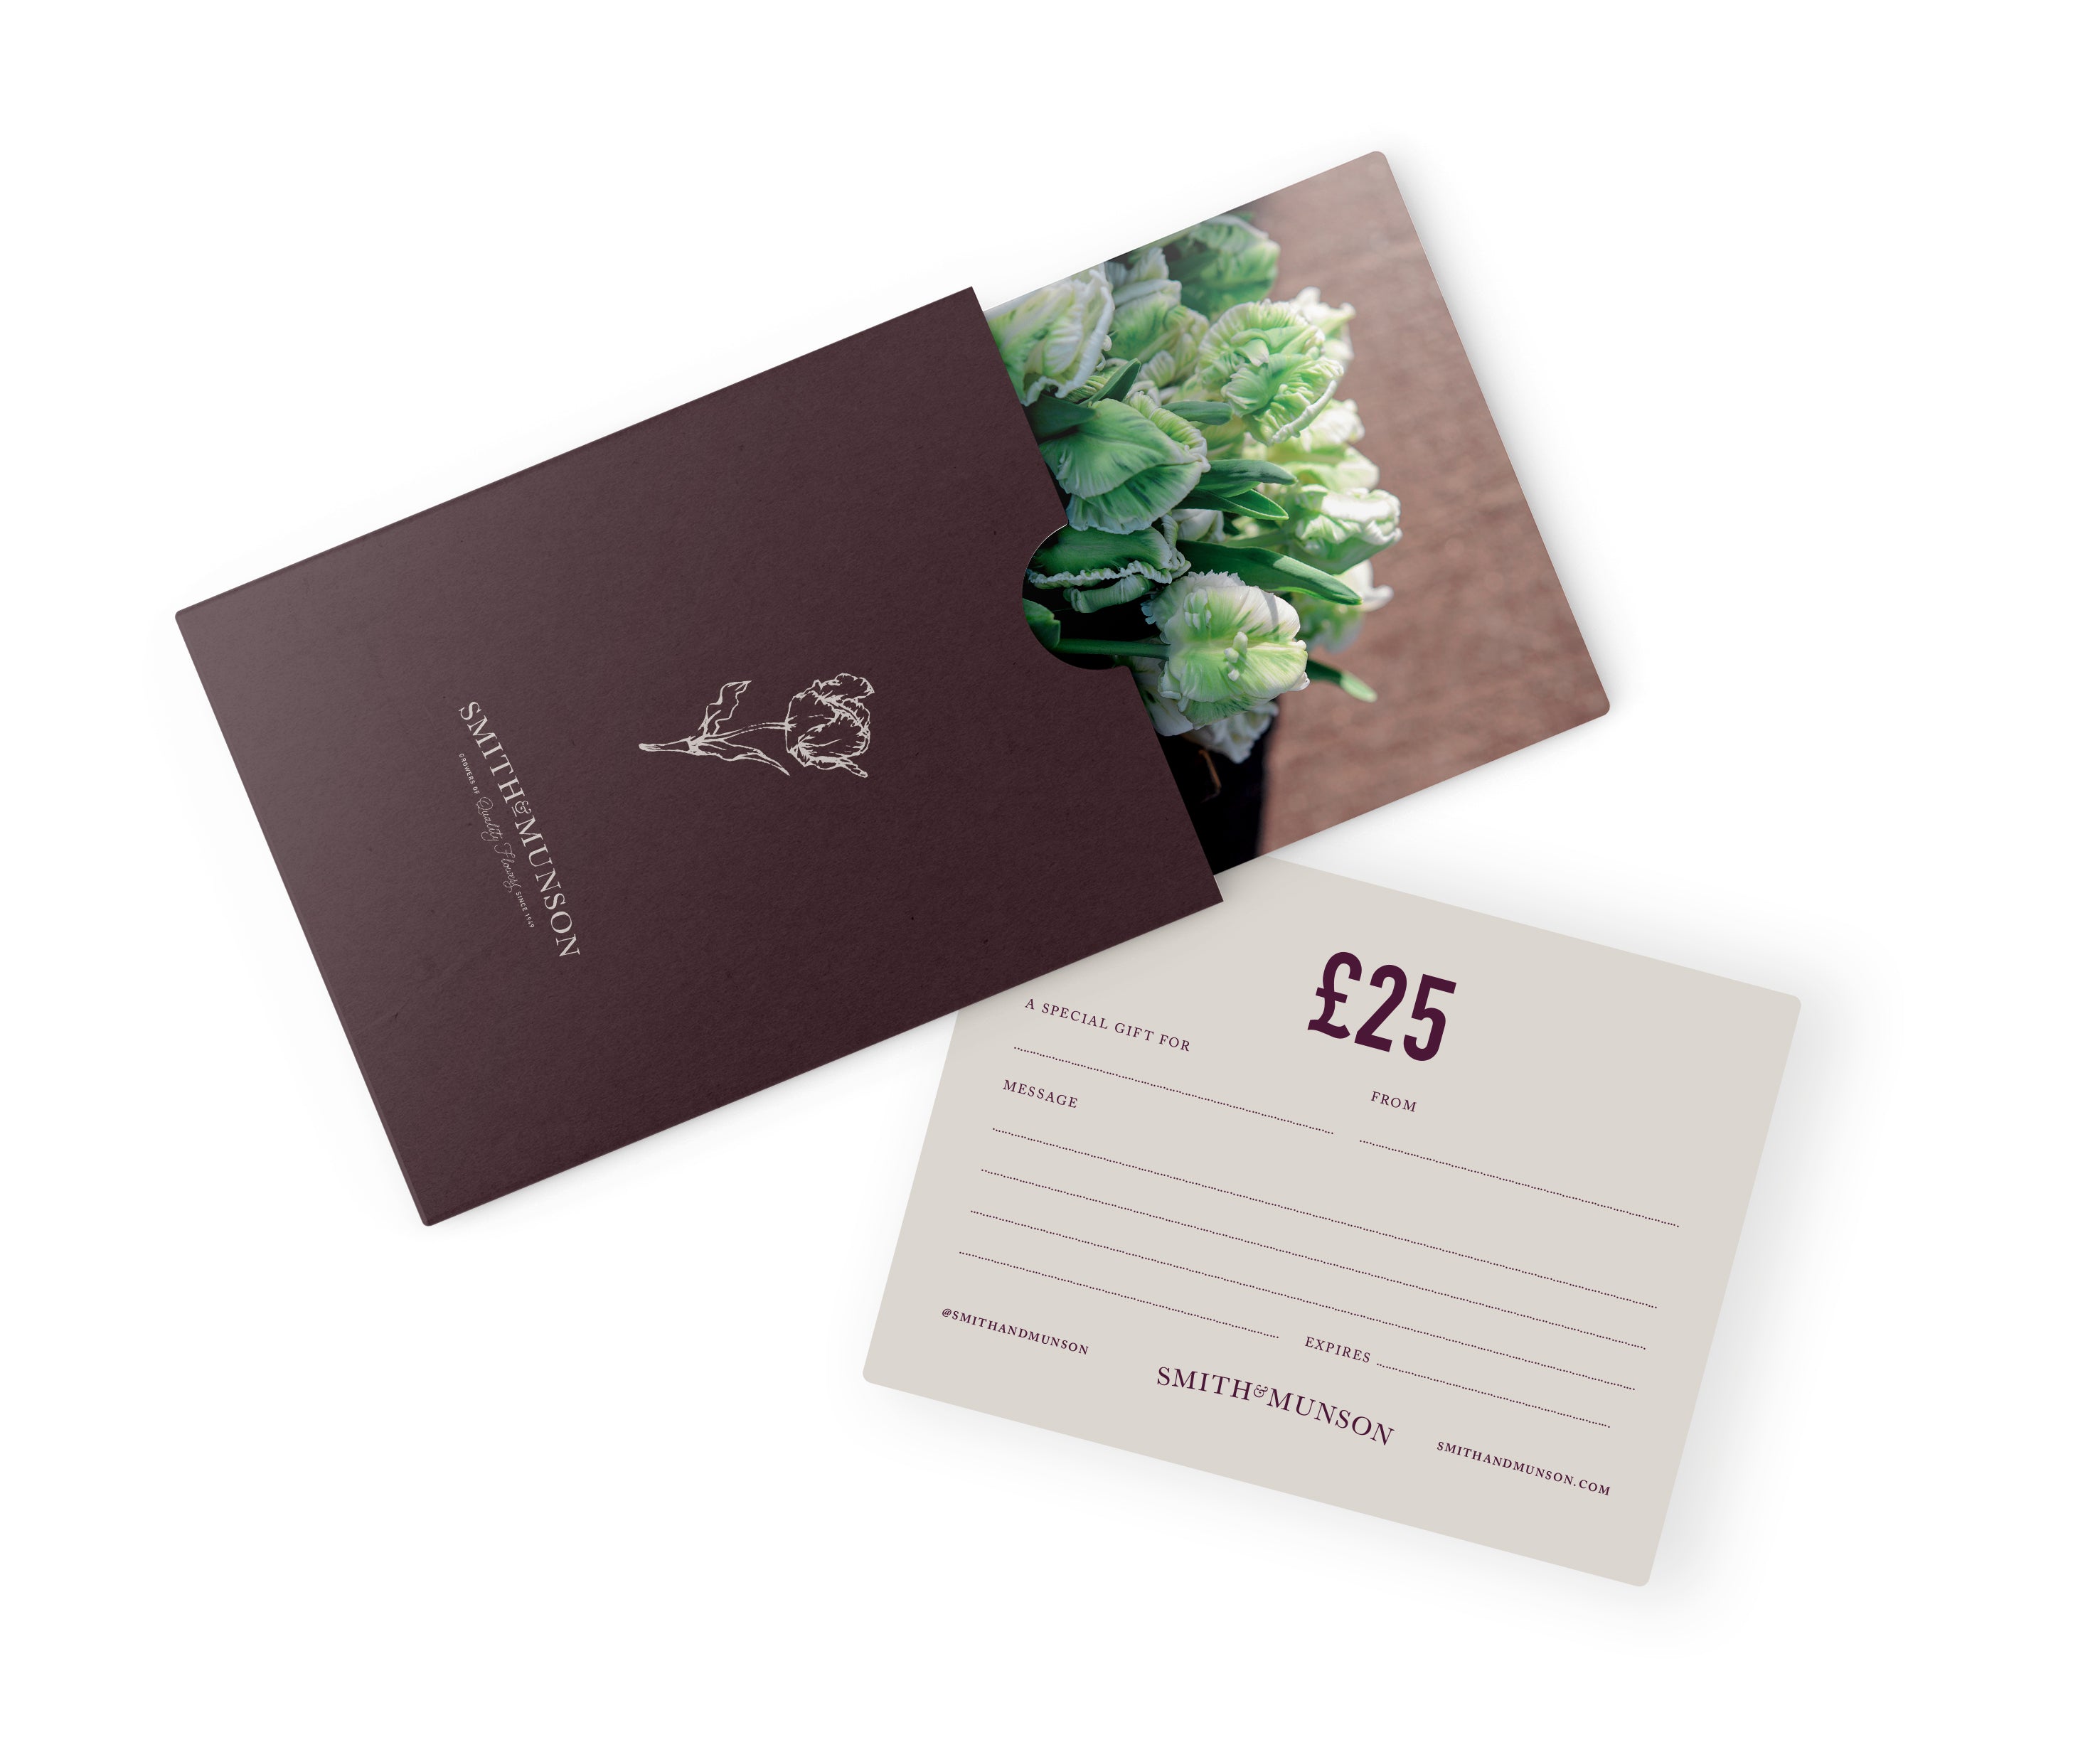 Smith & Munson Tulip Gift Card Voucher